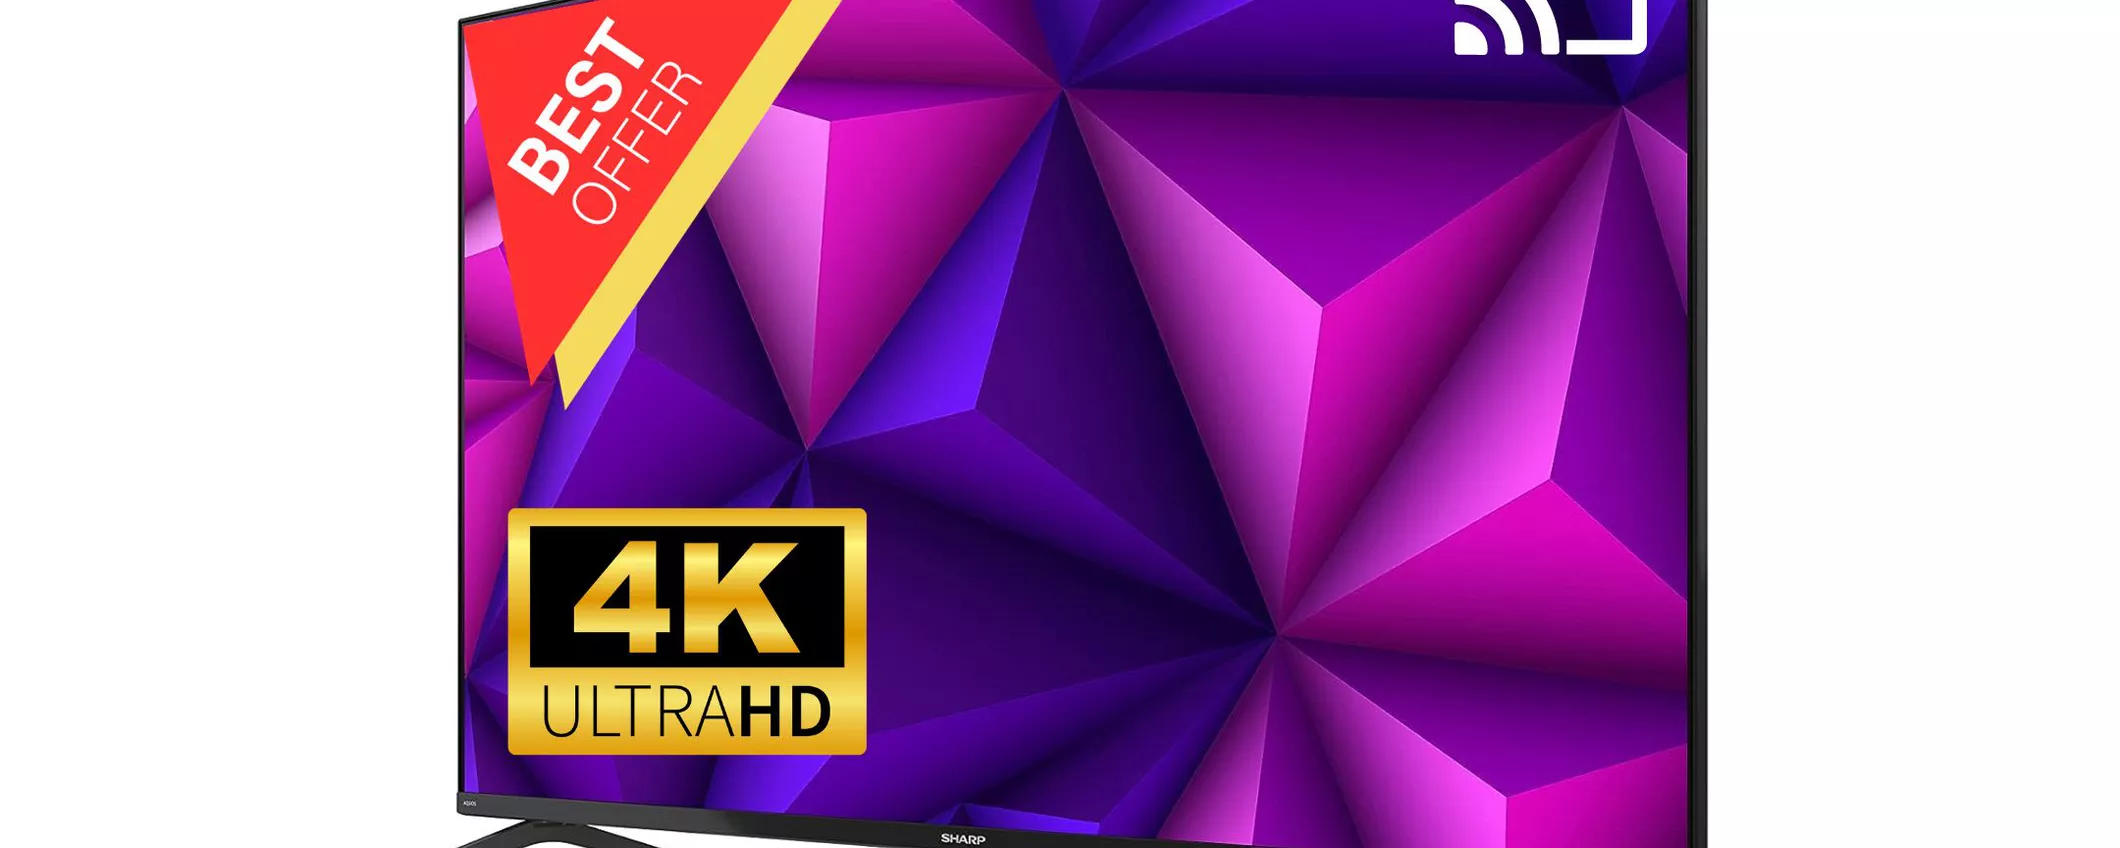 Smart TV 4K UHD Sharp: un GIOIELLO che oggi ti costa ancora meno!